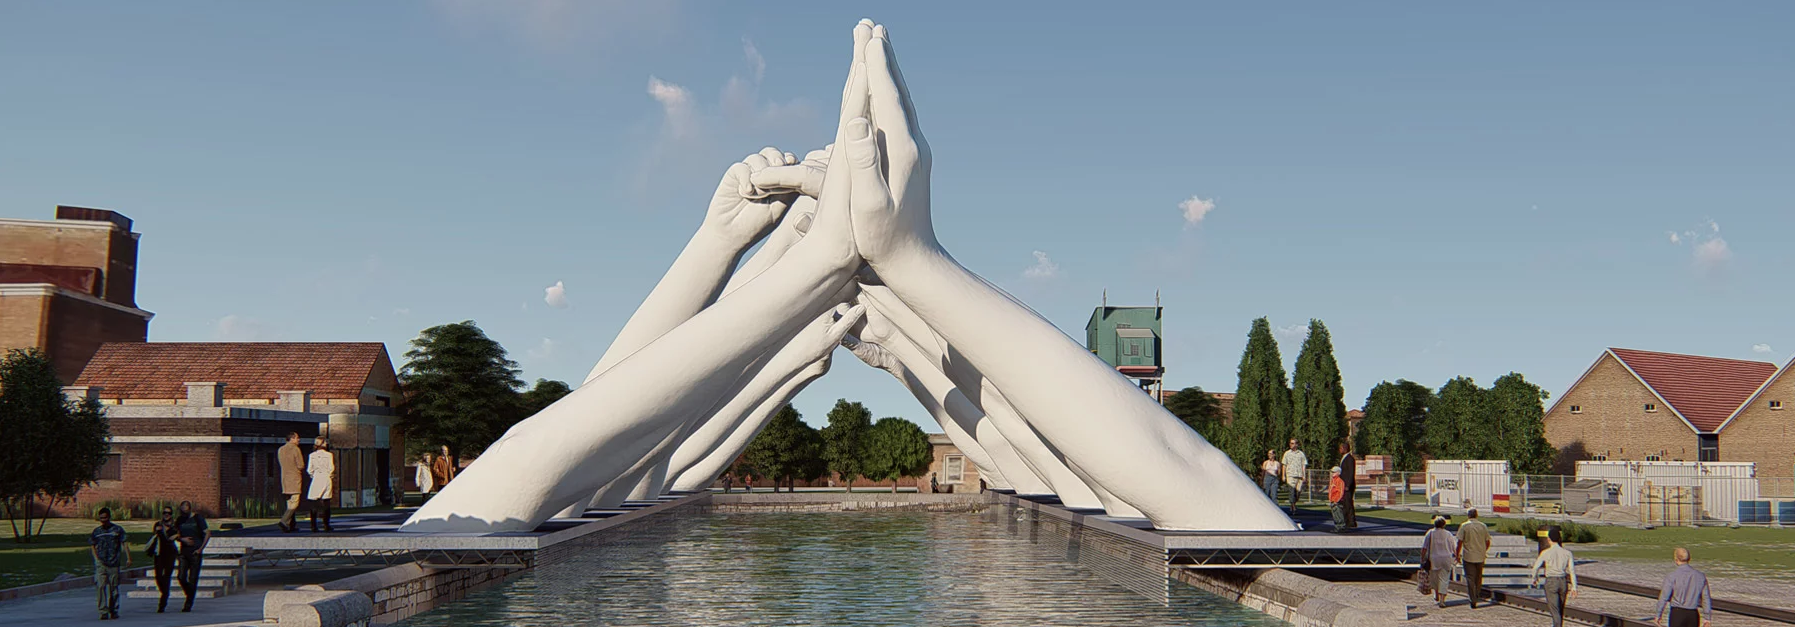  Лорензо Куинн 2019 оны Венецийн урлагийн биеннальд уран баримлын гараар нэгдэв.